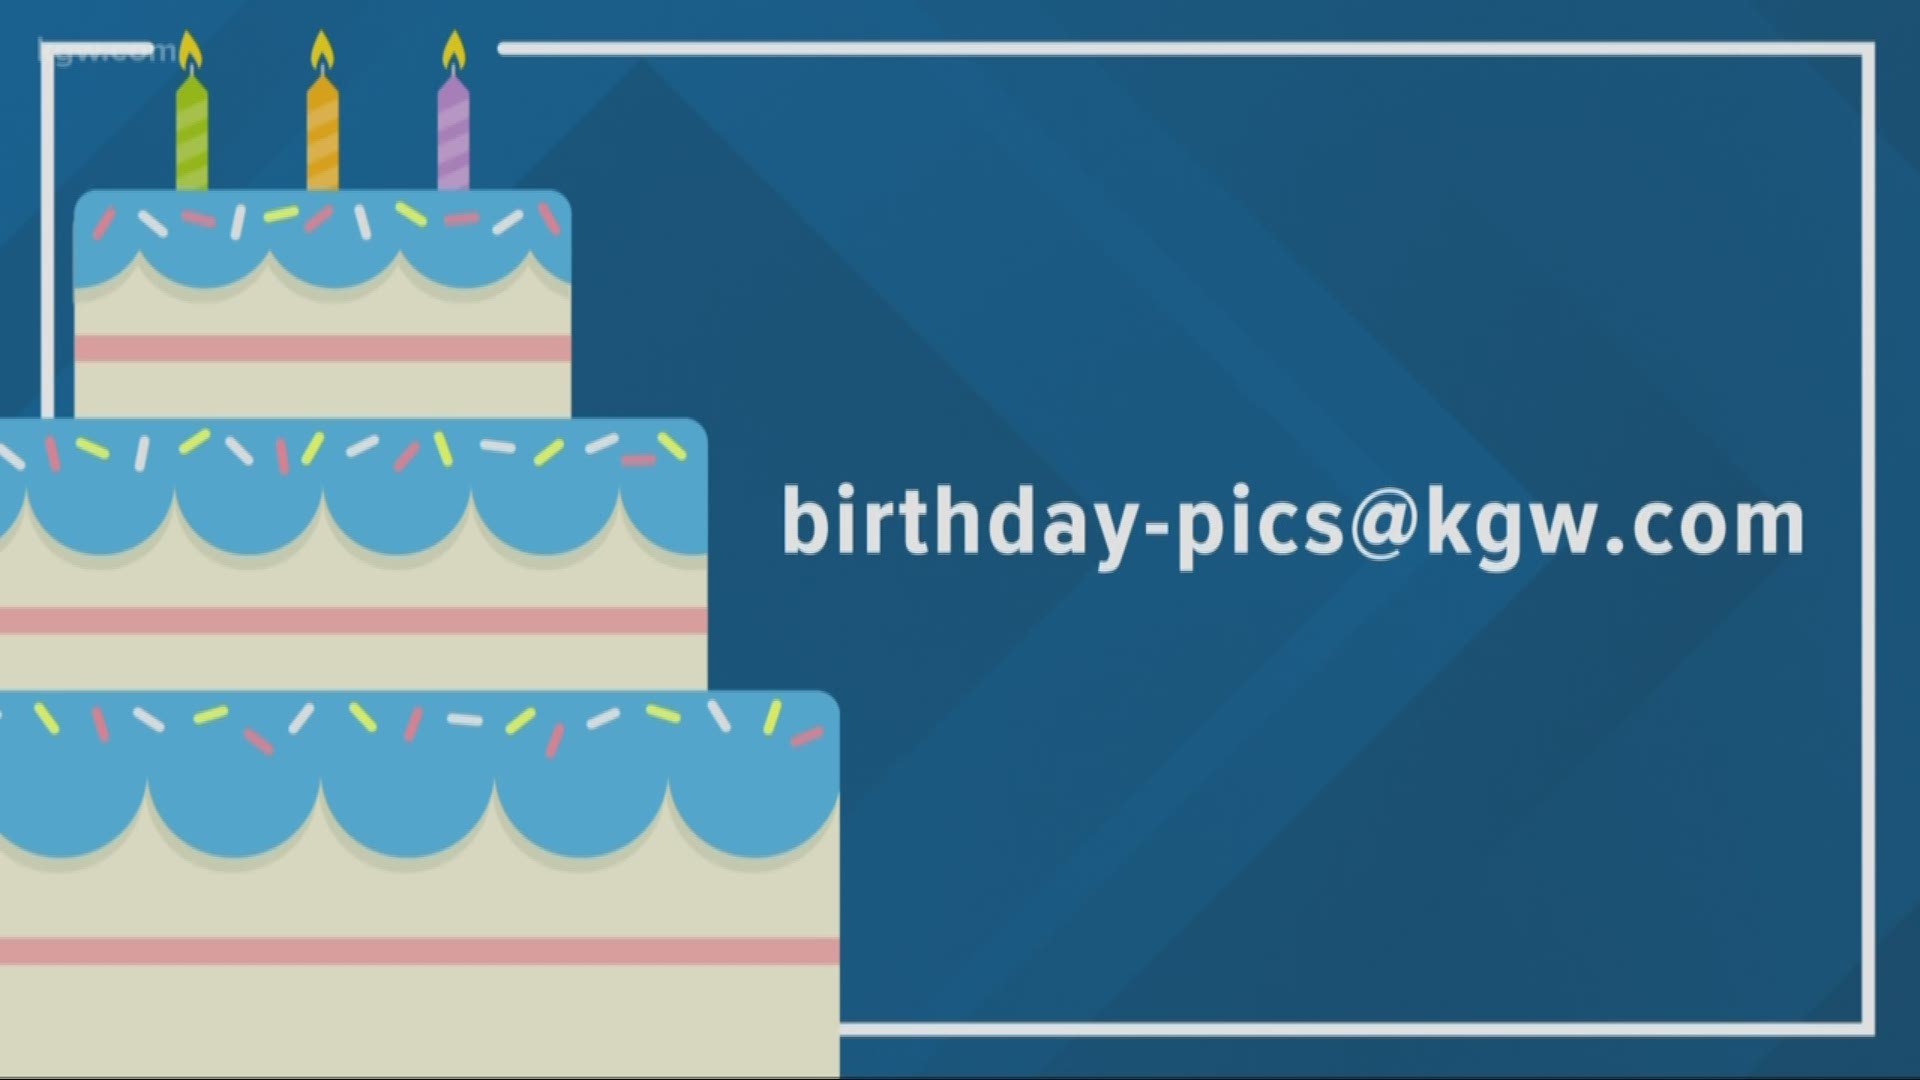 KGW viewer birthdays: 10-19-18